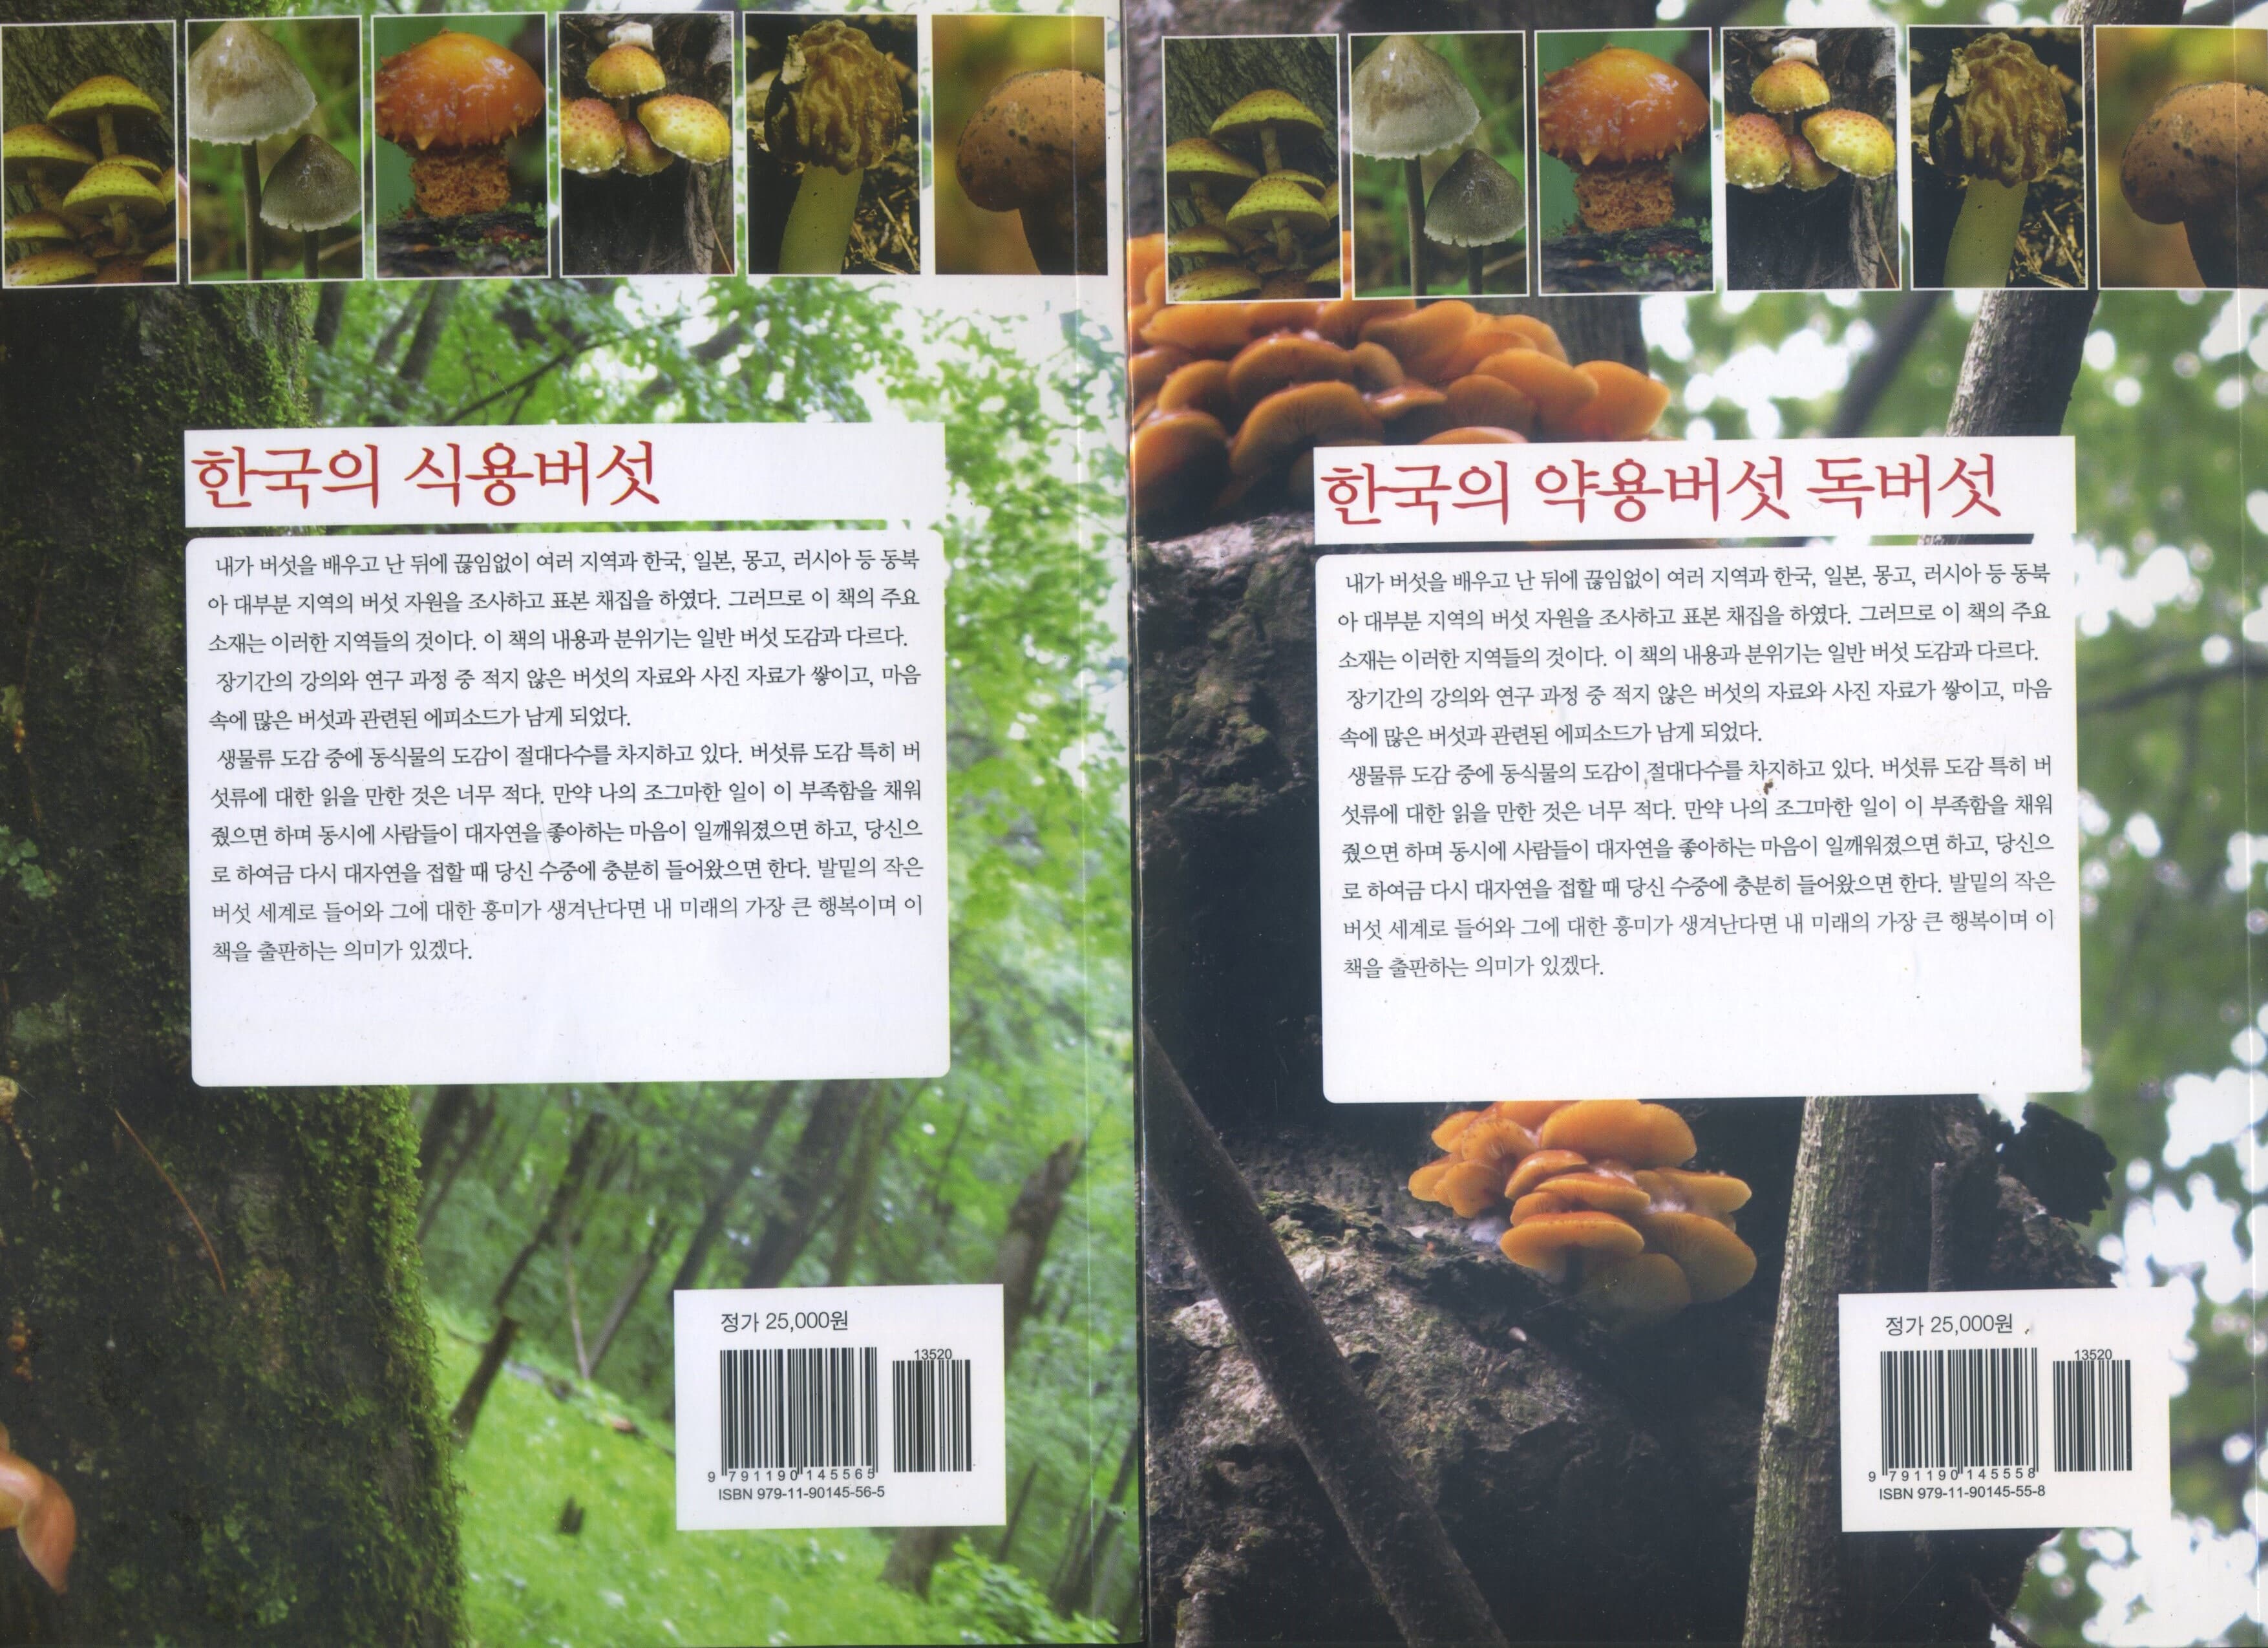 한국의 식용버섯1권+한국의 약용버섯.독버섯1권 (전2권)-김오곤 원장이 추천하는 버섯도감 올컬러